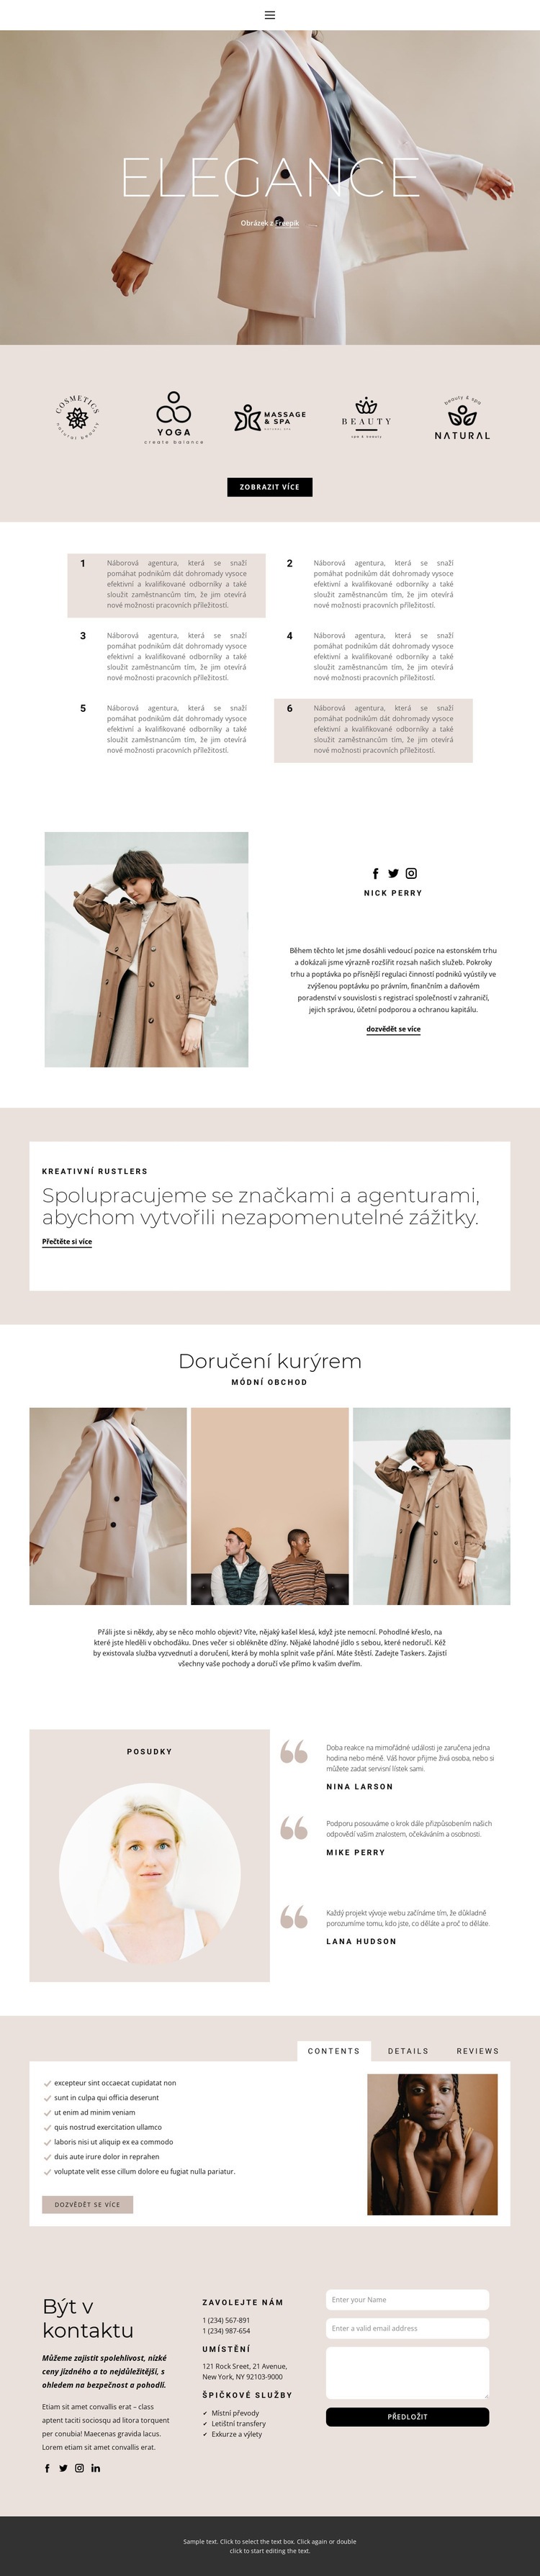 Elegance v módě Šablona webové stránky